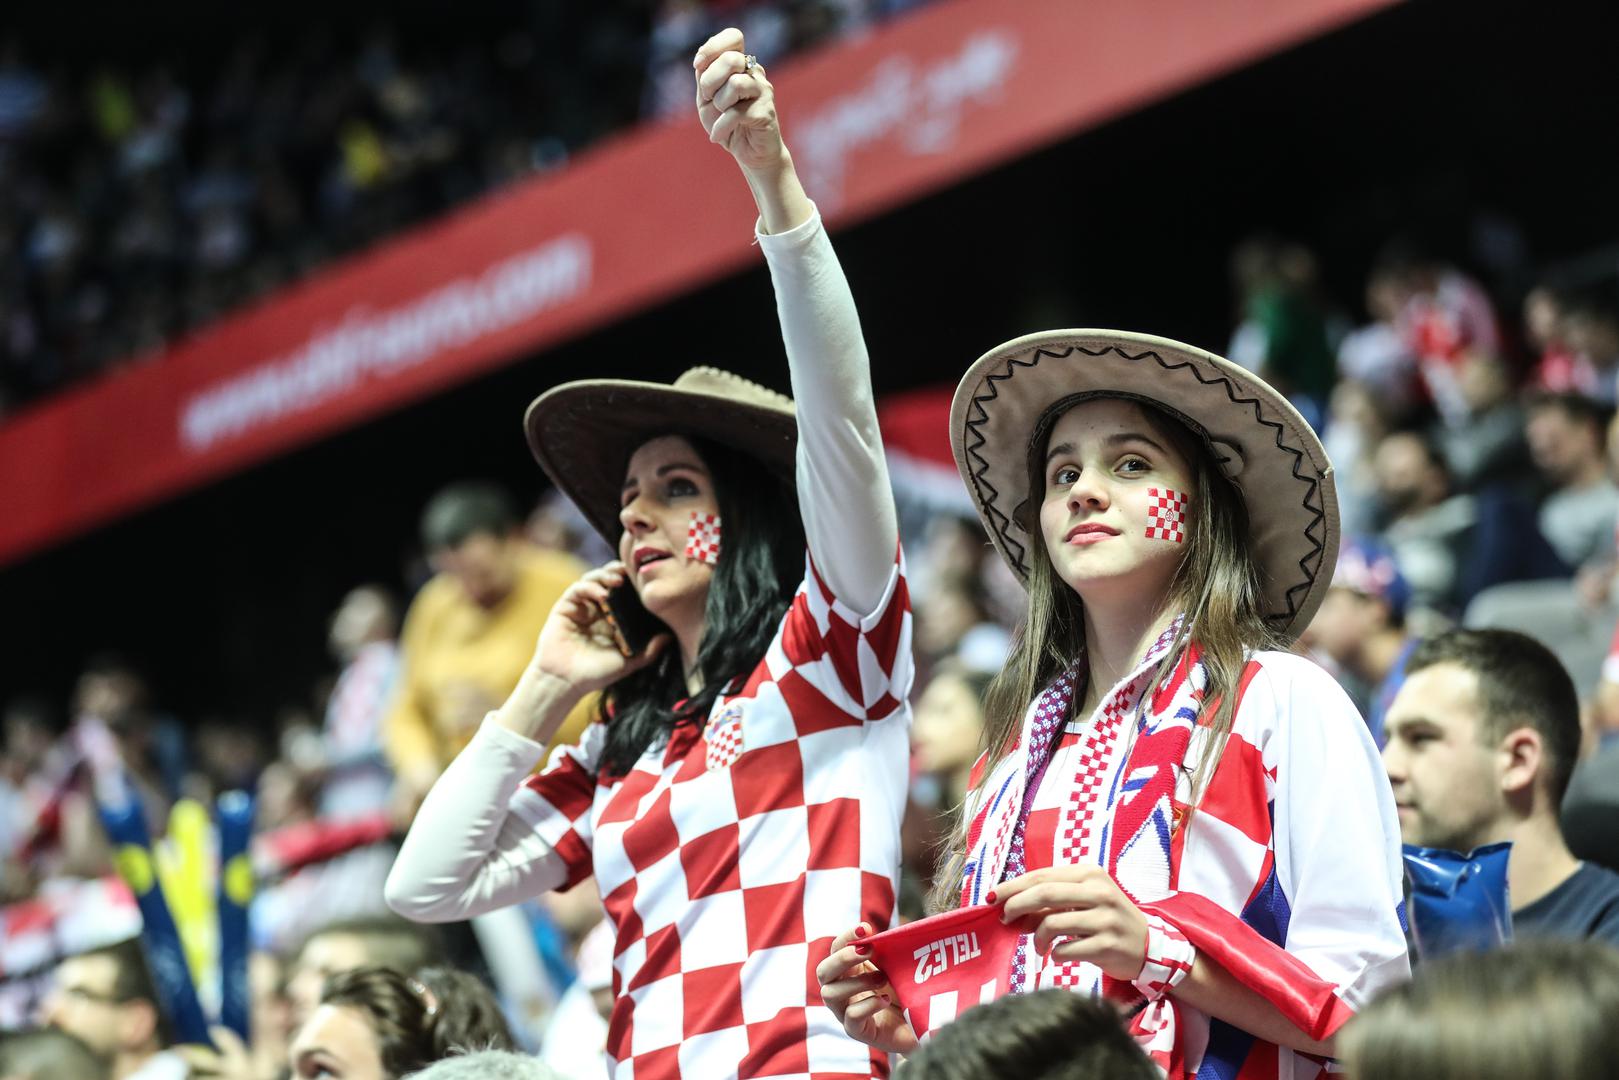 Uz vrhunski rukomet u dvoranama u kojima se održava Europsko prvenstvo, pozornost itekako privlače pripadnice ljepšeg spola.